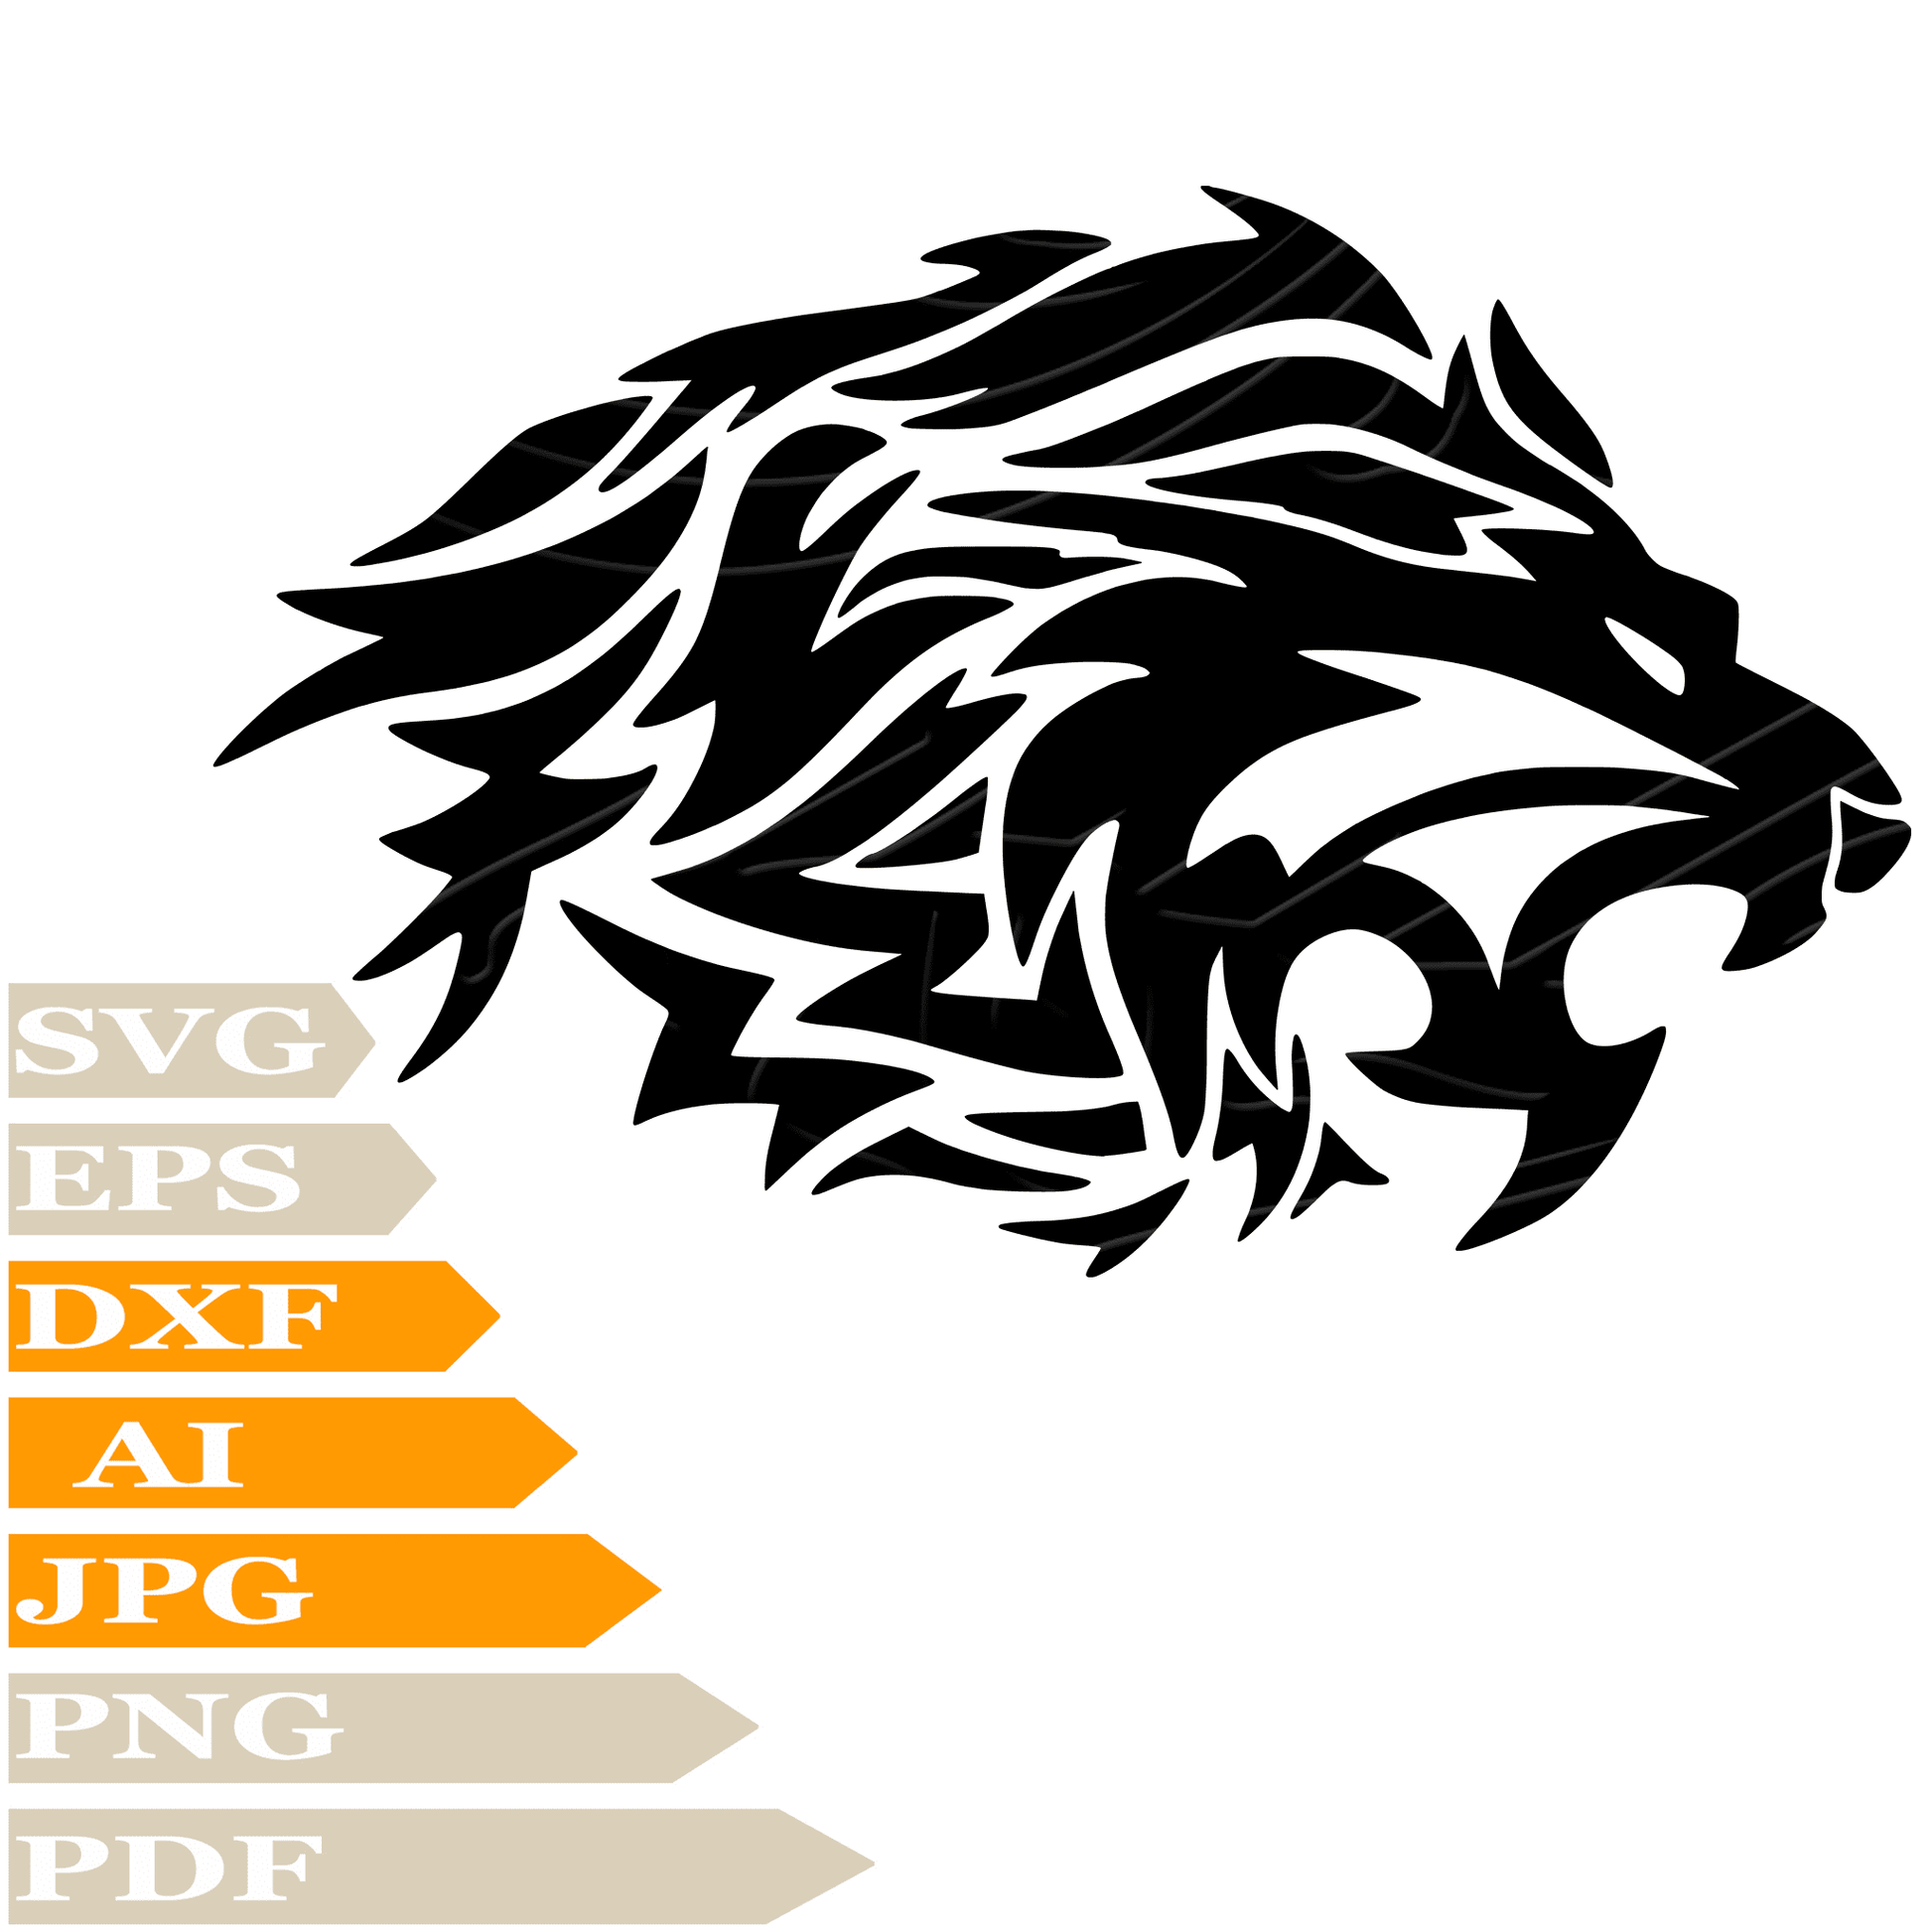 Lion SVG File, Leo Head SVG Design, Roaring Lion SVG Cricut, Lion Head Digital Vector, PNG, Image Cut, Clipart, Cut File, Print, Decal, Shirt, Silhouette